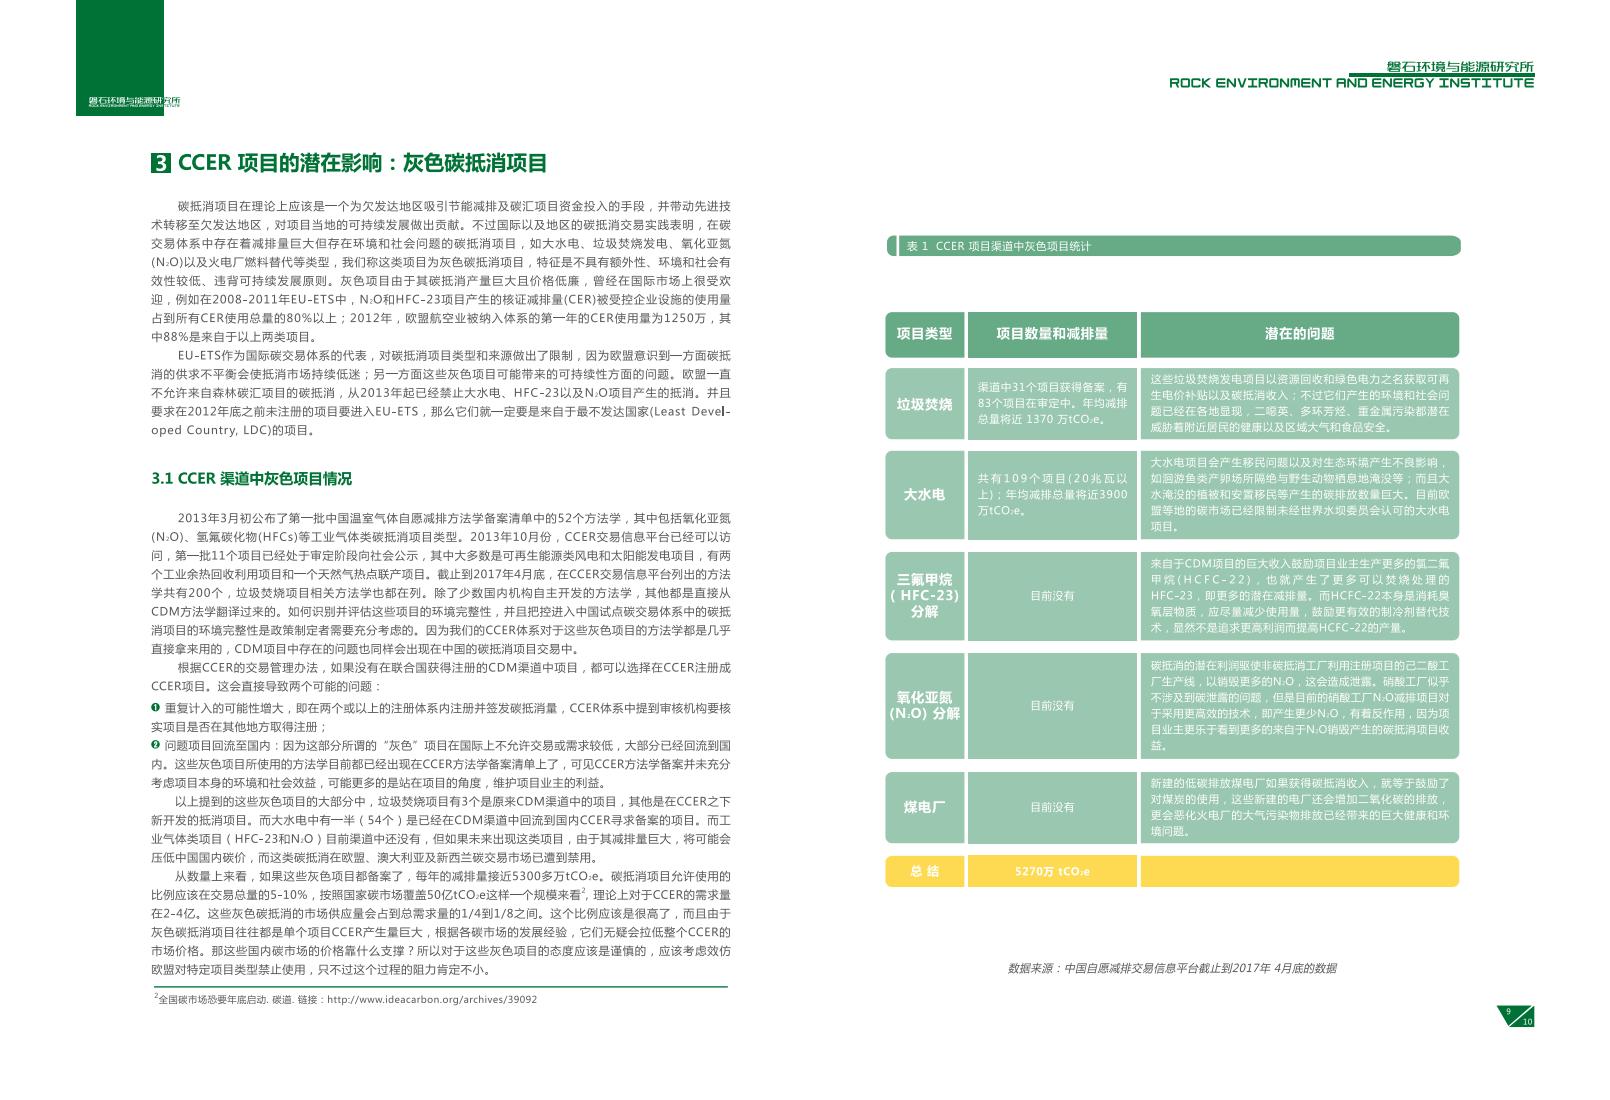 碳市场工作手册(磐之石环境与能源研究中心)